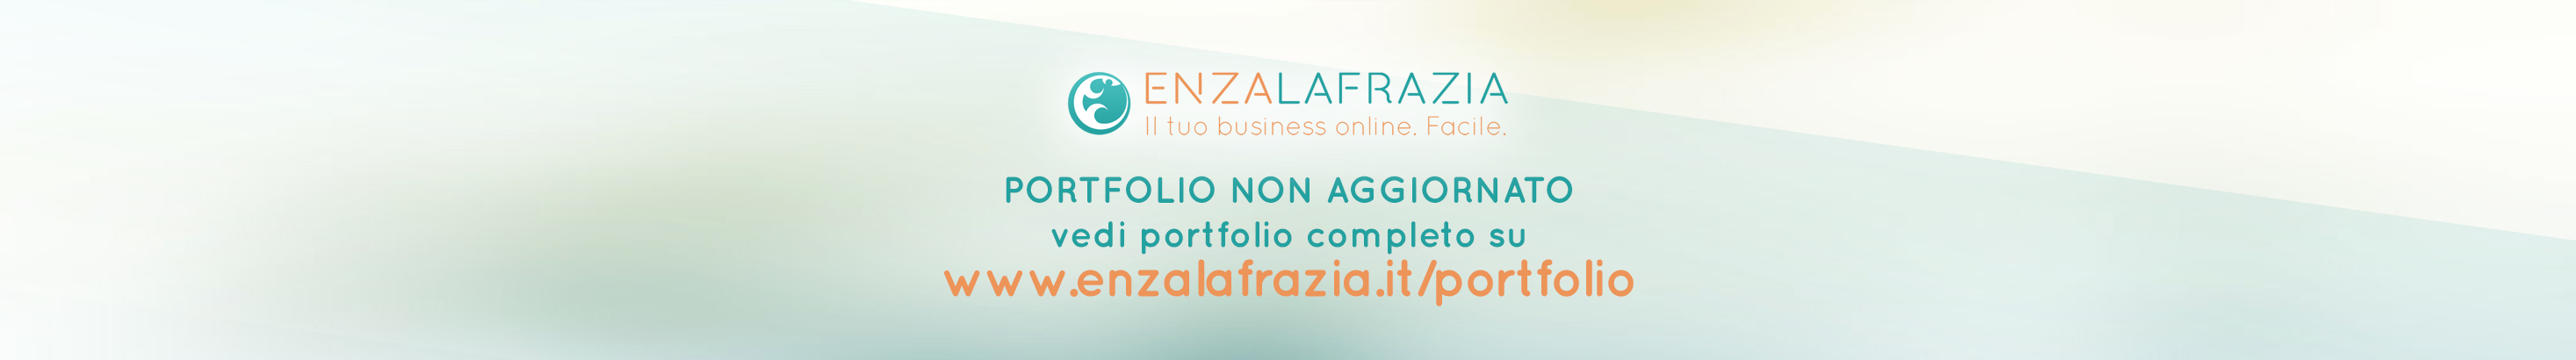 Baner profilu użytkownika Enza La Frazia